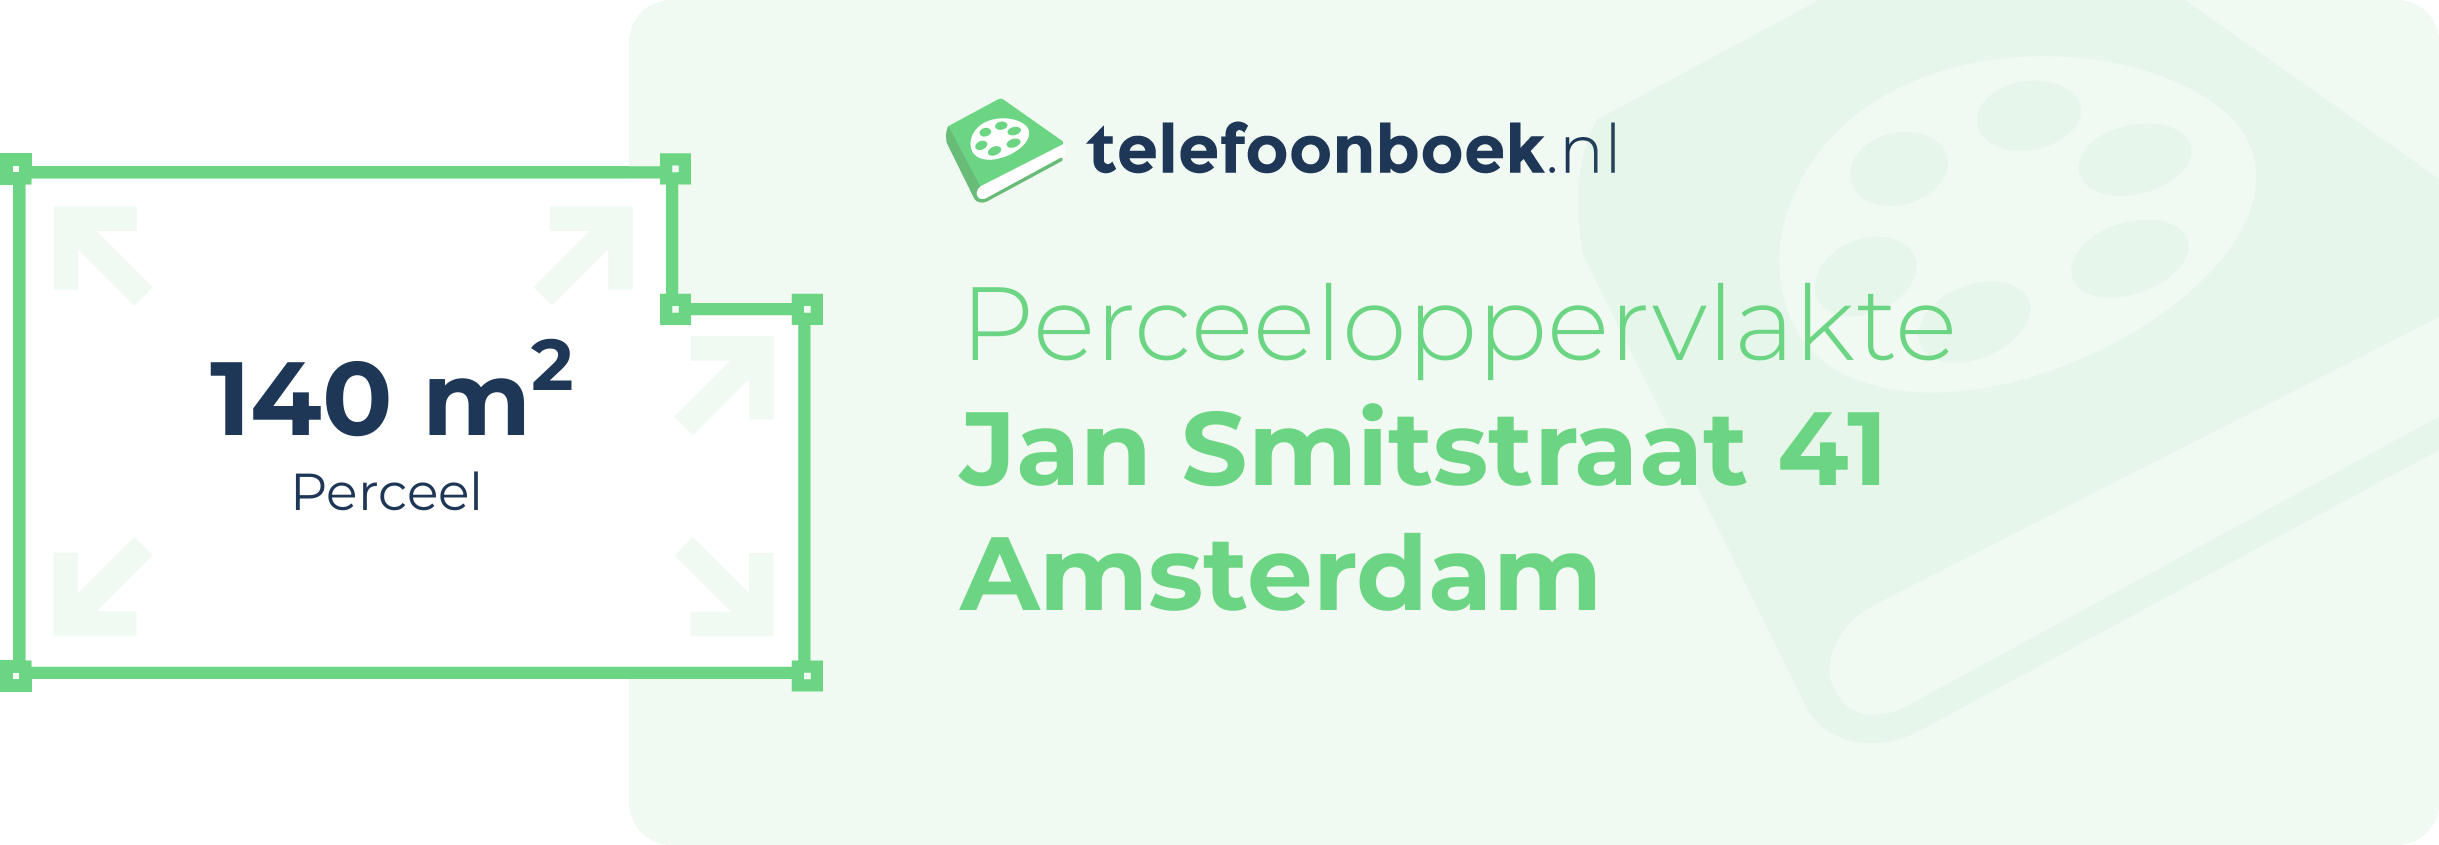 Perceeloppervlakte Jan Smitstraat 41 Amsterdam